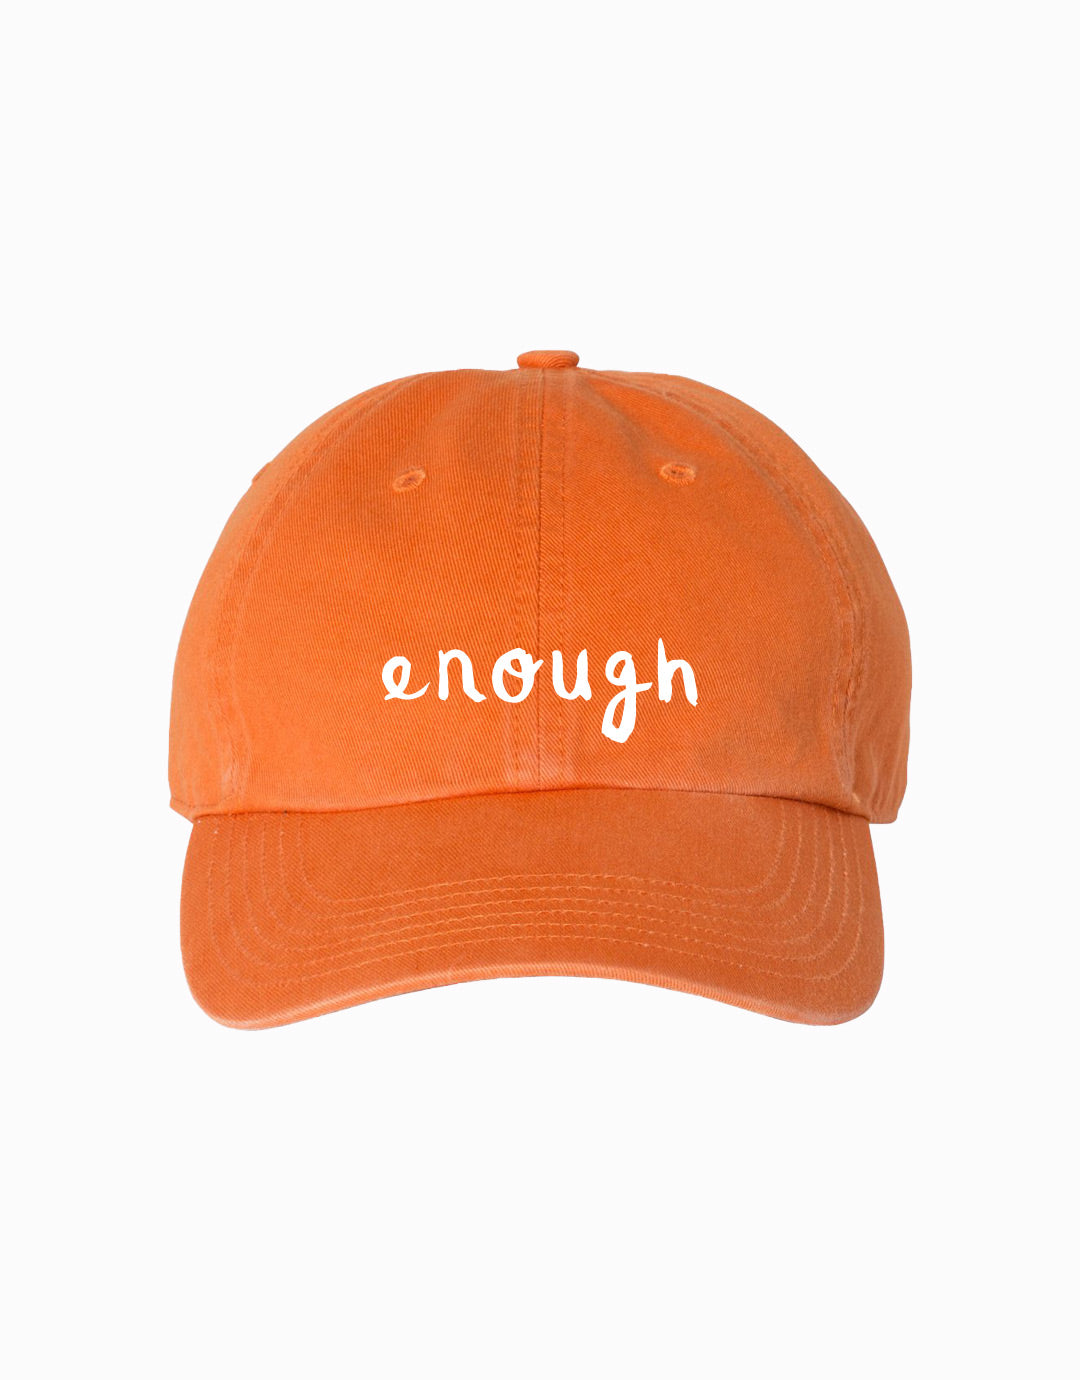 Enough Hat